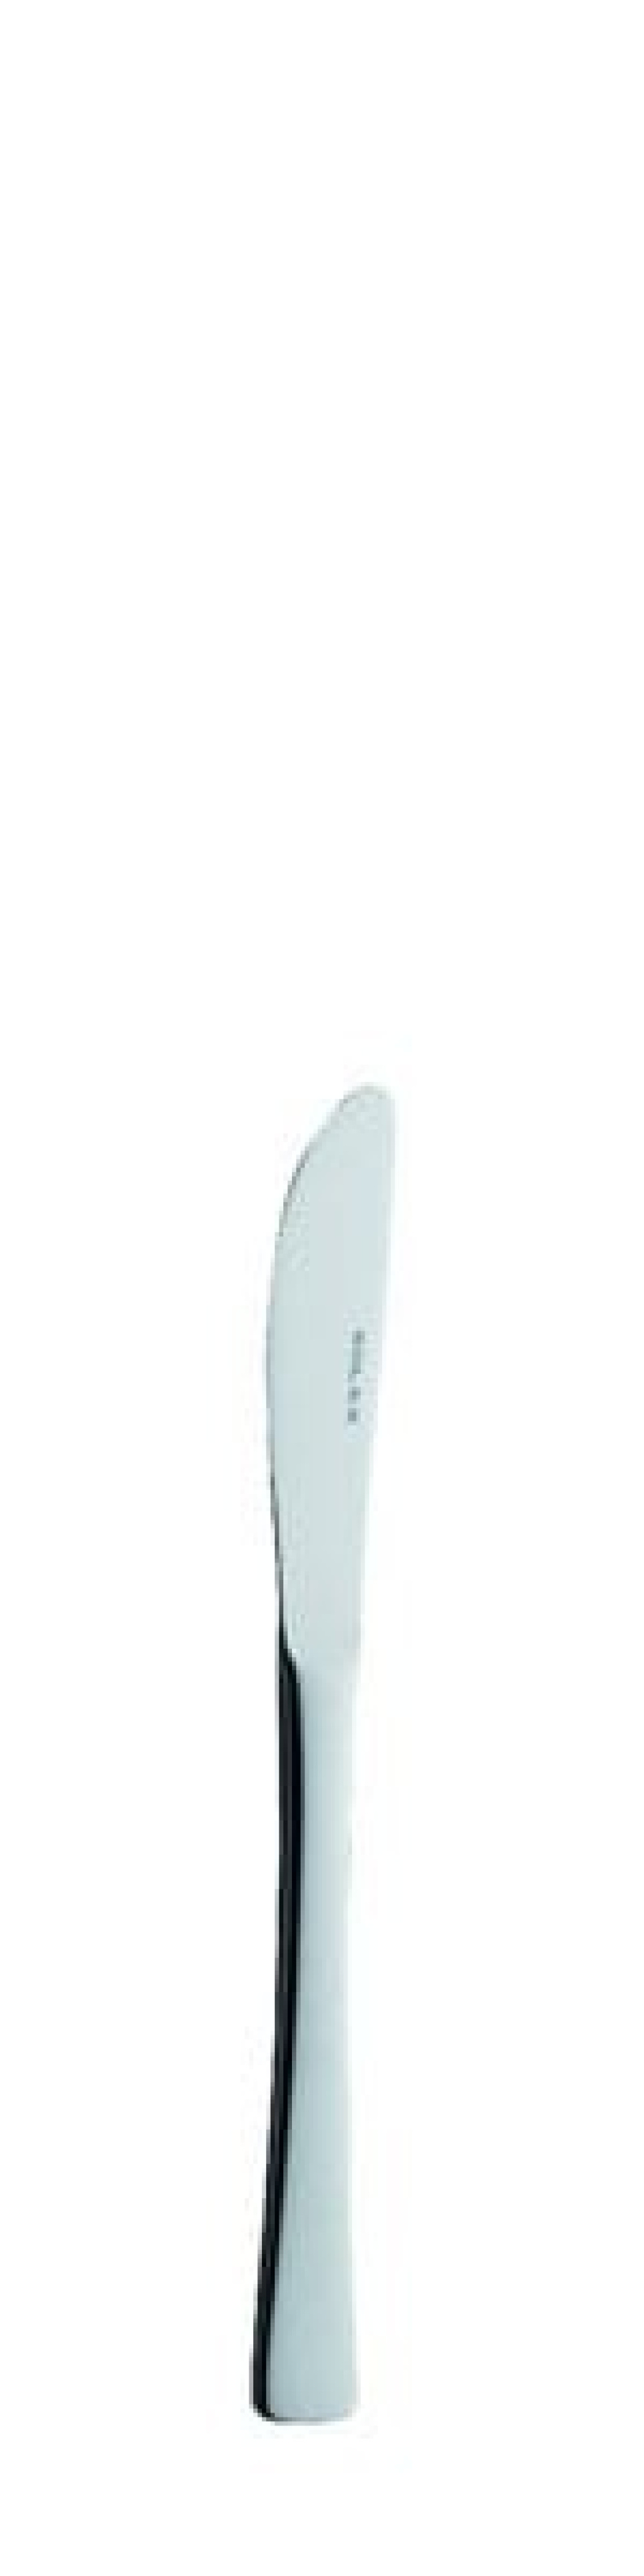 Nóż do masła Karina 168 mm - Solex w grupie Nakrycie stołu / Sztućce / Noże do masła w The Kitchen Lab (1284-21457)